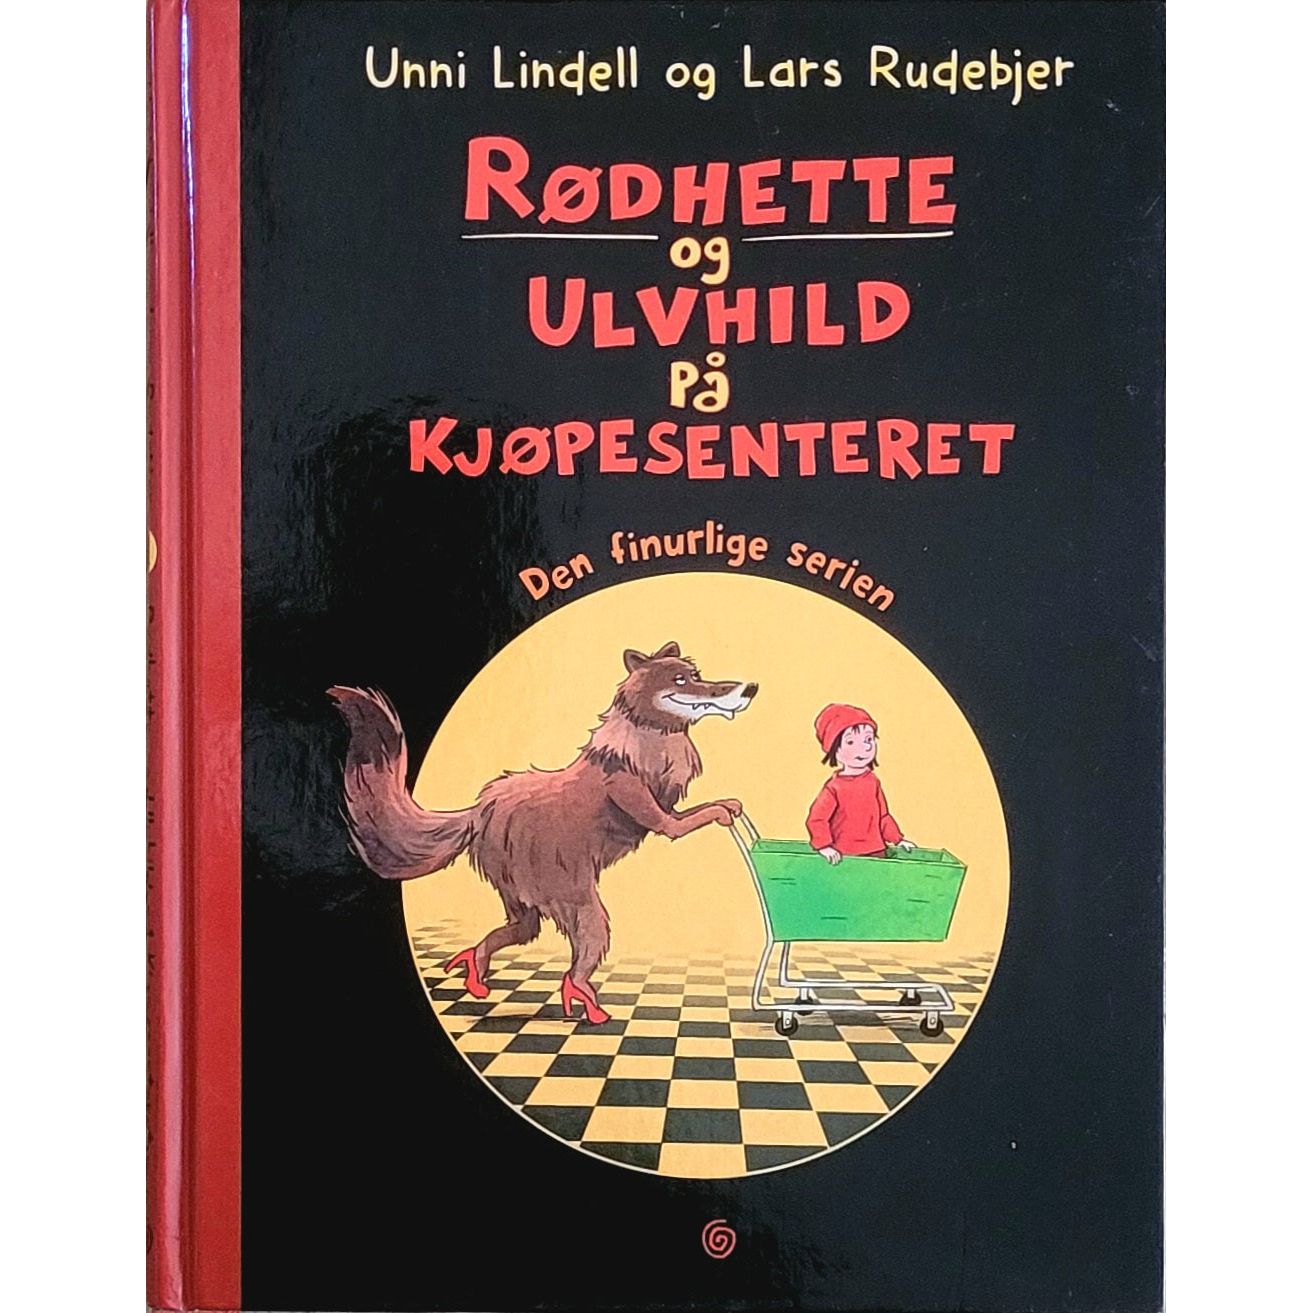 Rødhette og Ulvhild på kjøpesenteret. Brukte bøker av Unni Lindell og Lars Rudebjer